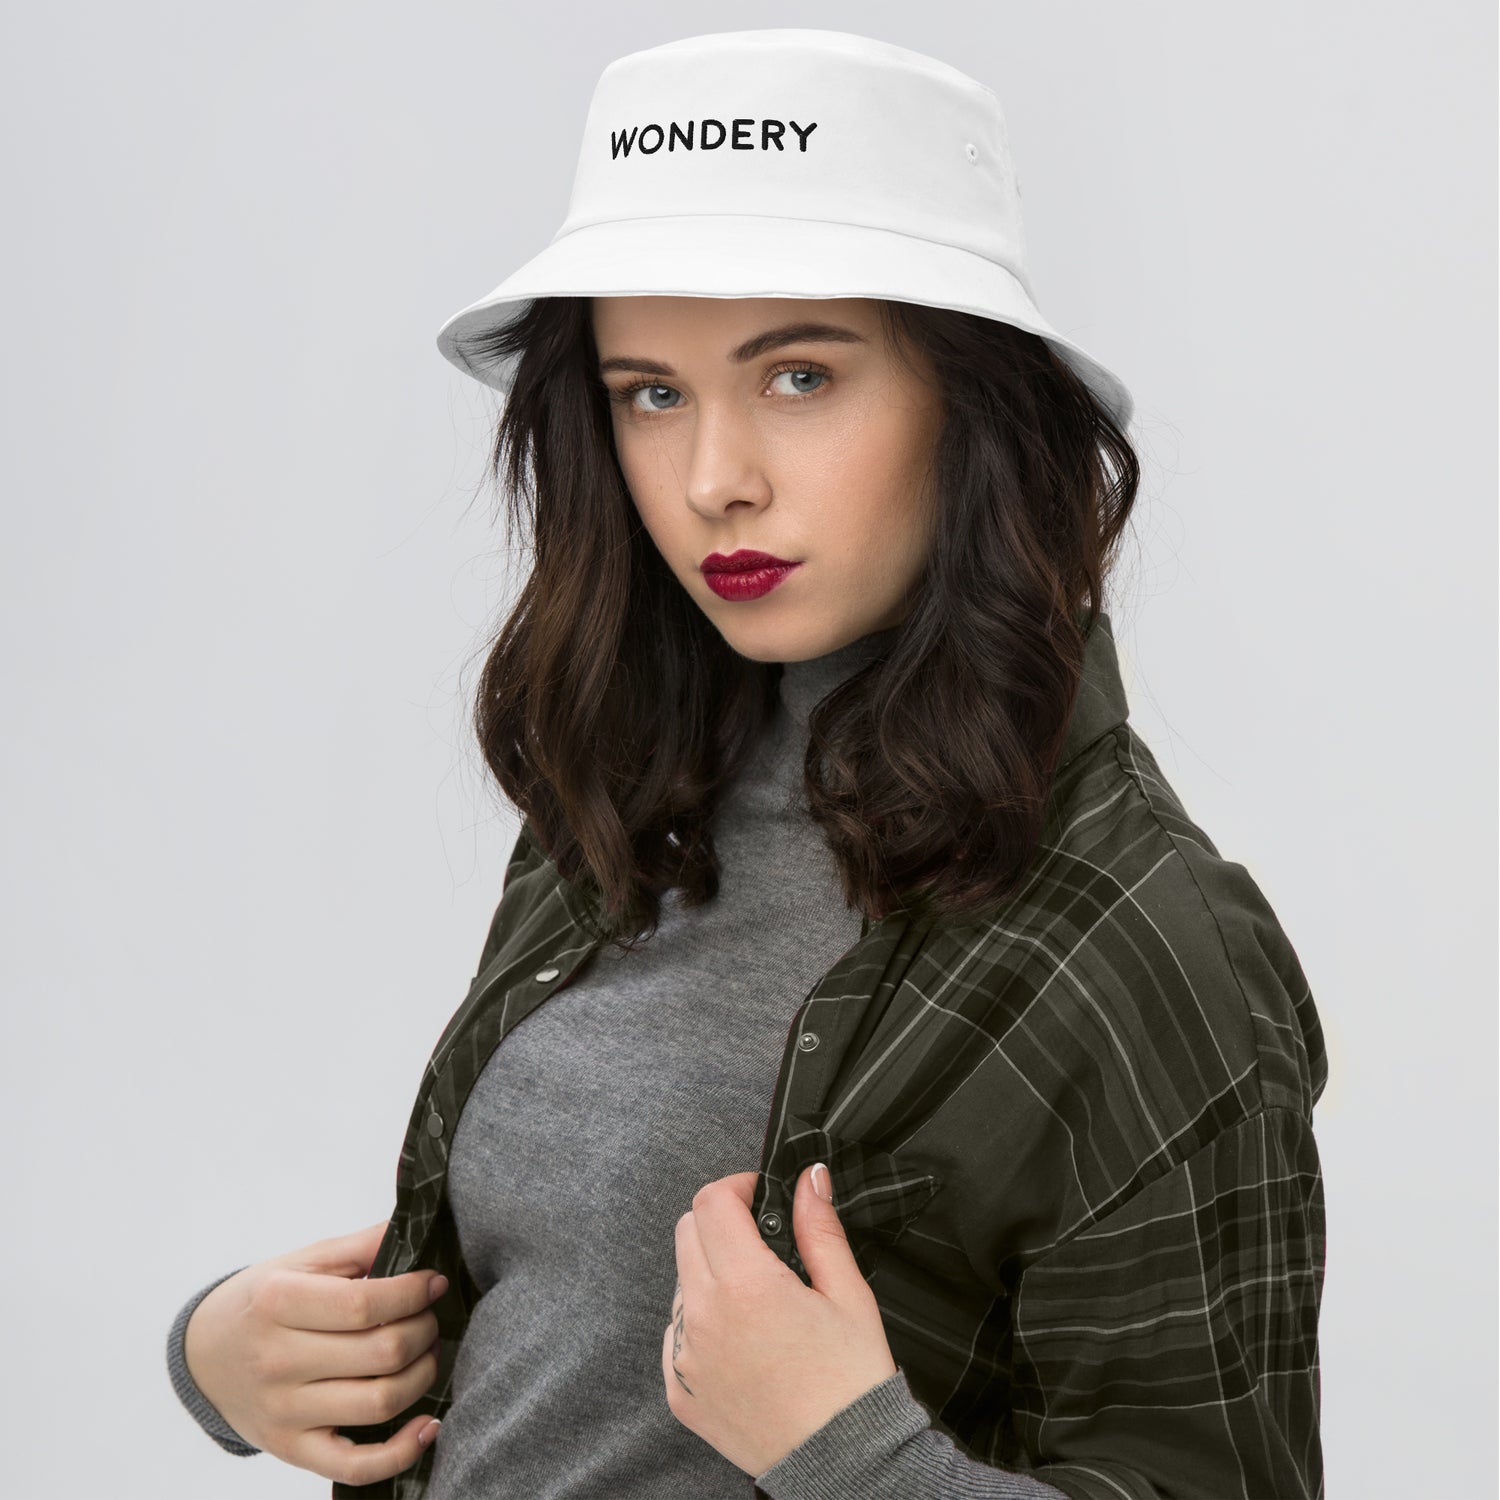 Wondery Logo Flexfit Bucket Hat